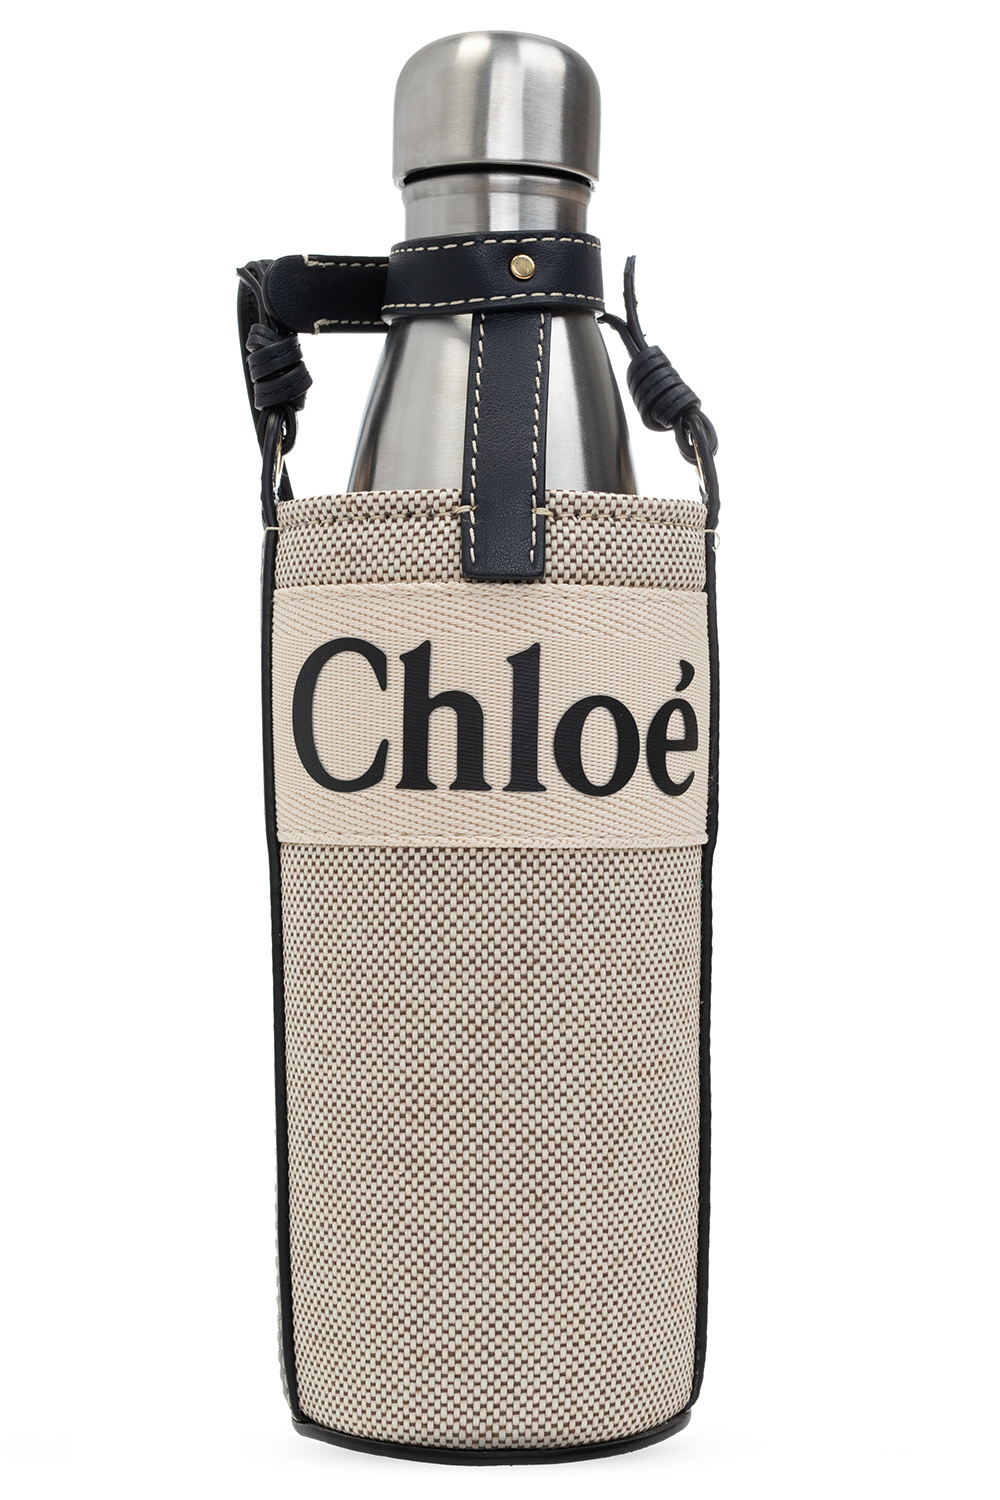 Chloe bottle collection ugel01ep.gob.pe